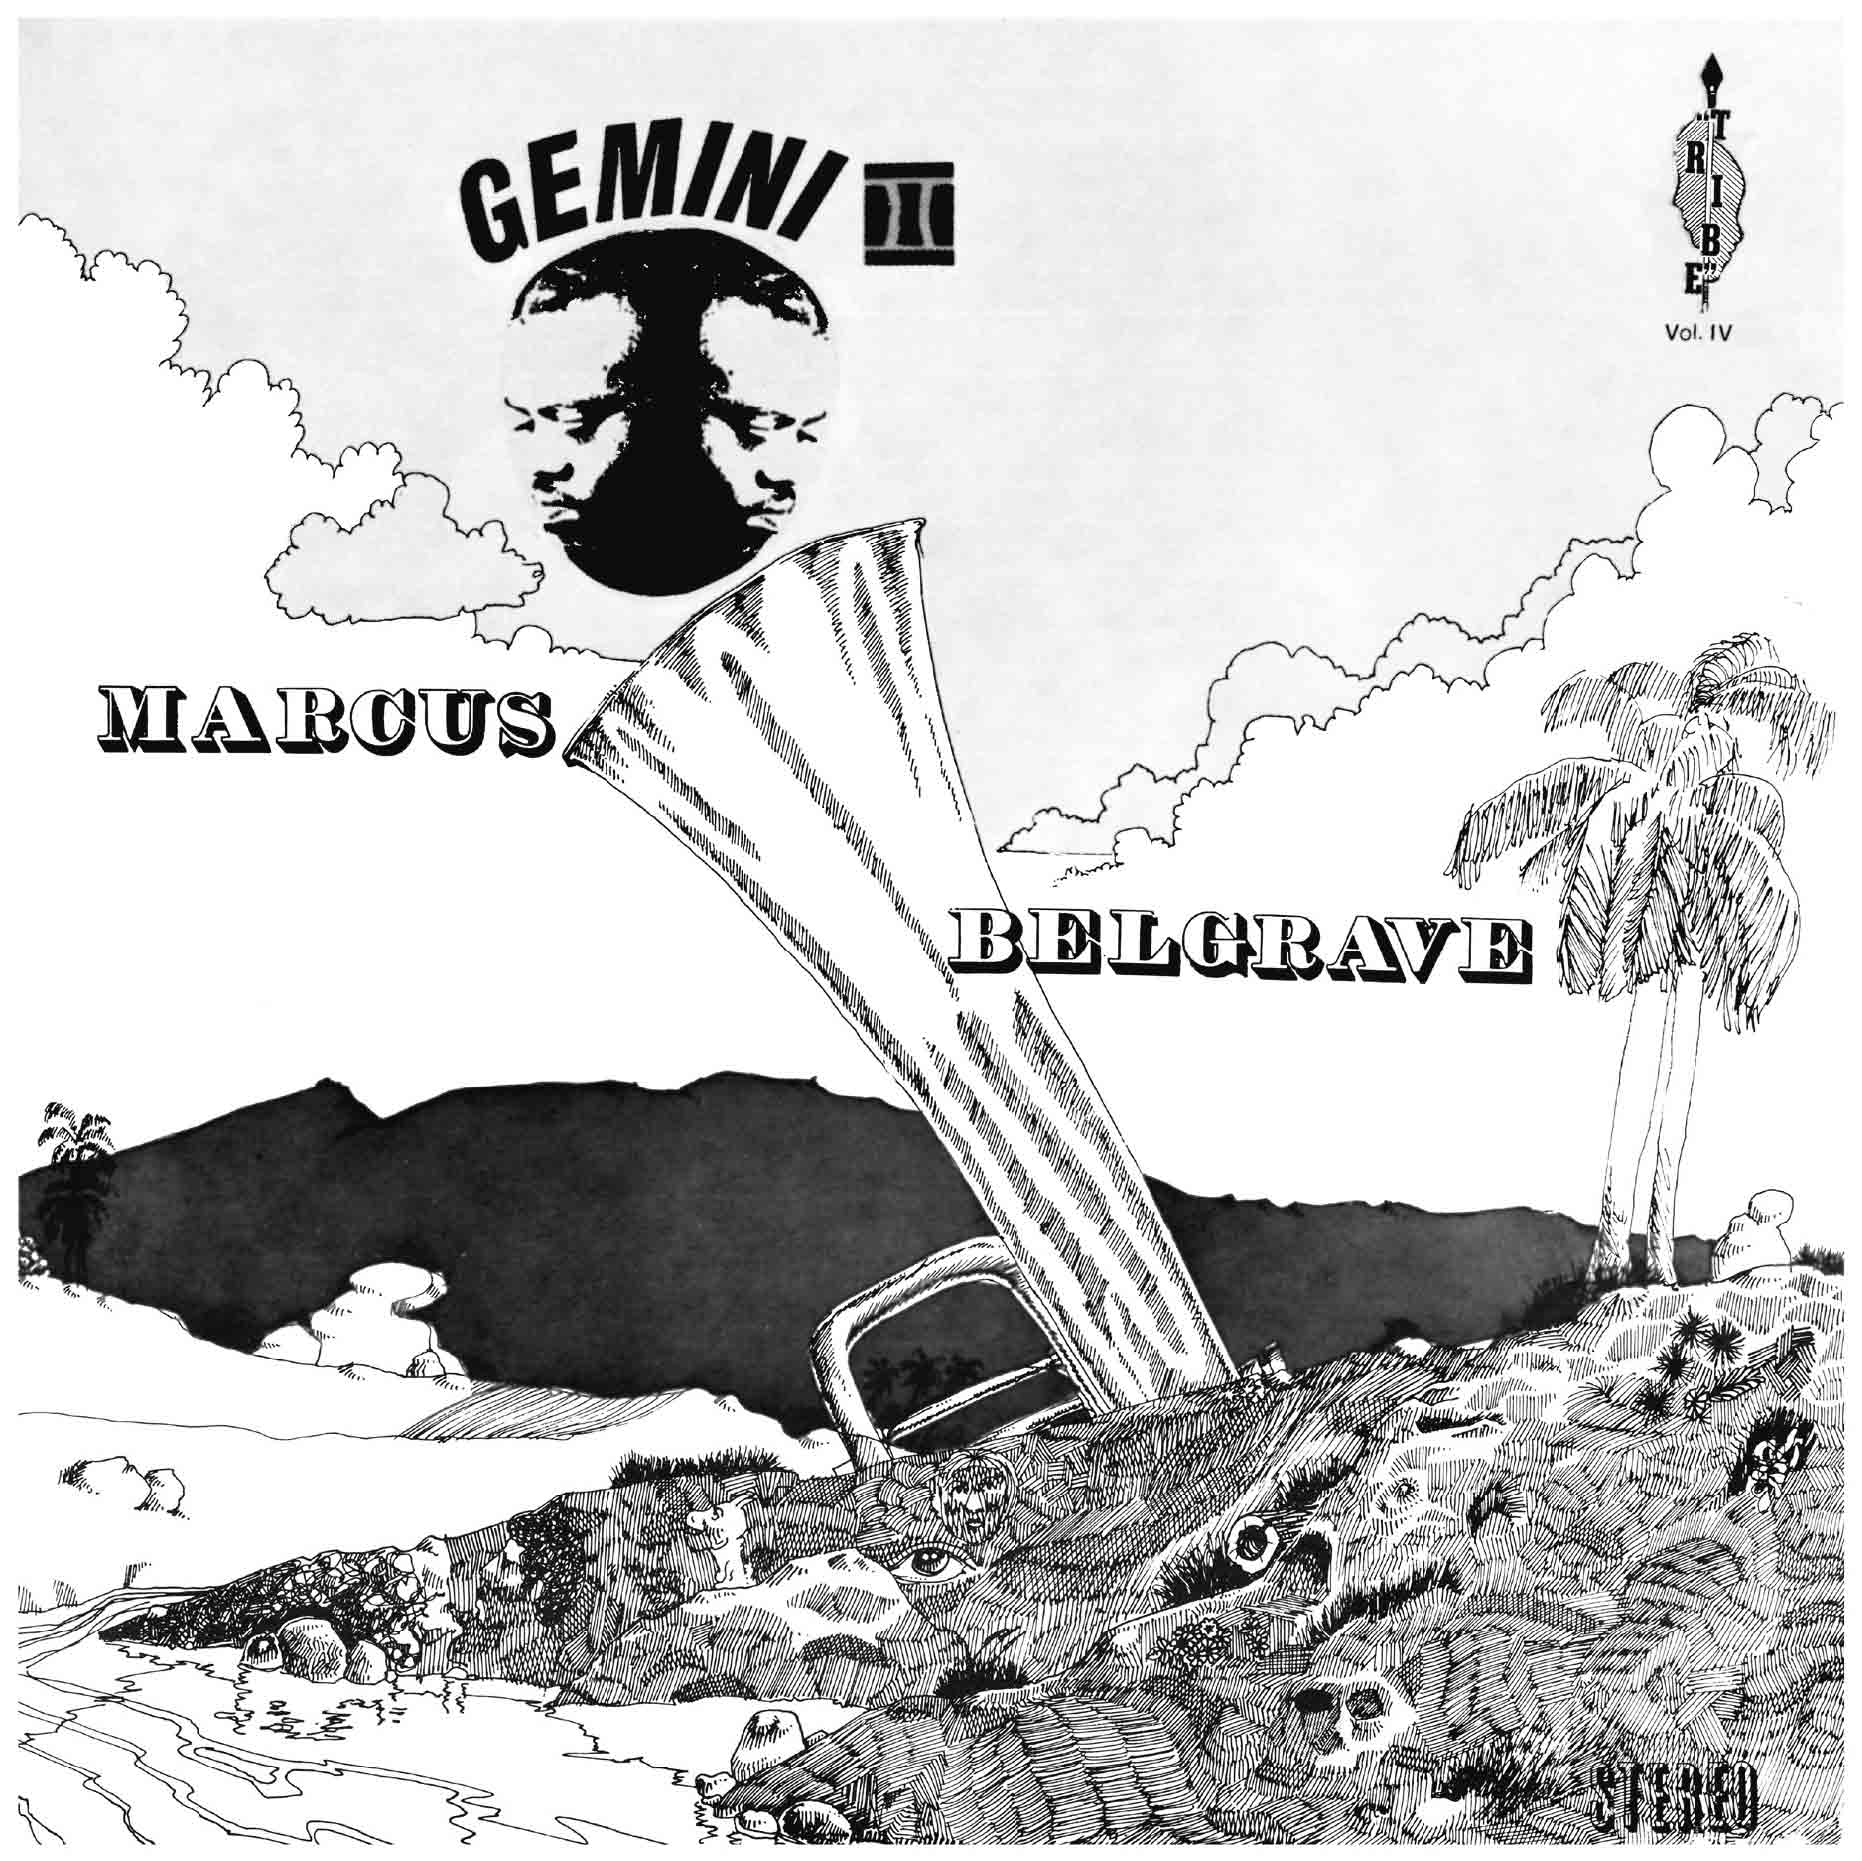 MARCUS BELGRAVE「Gemini II」